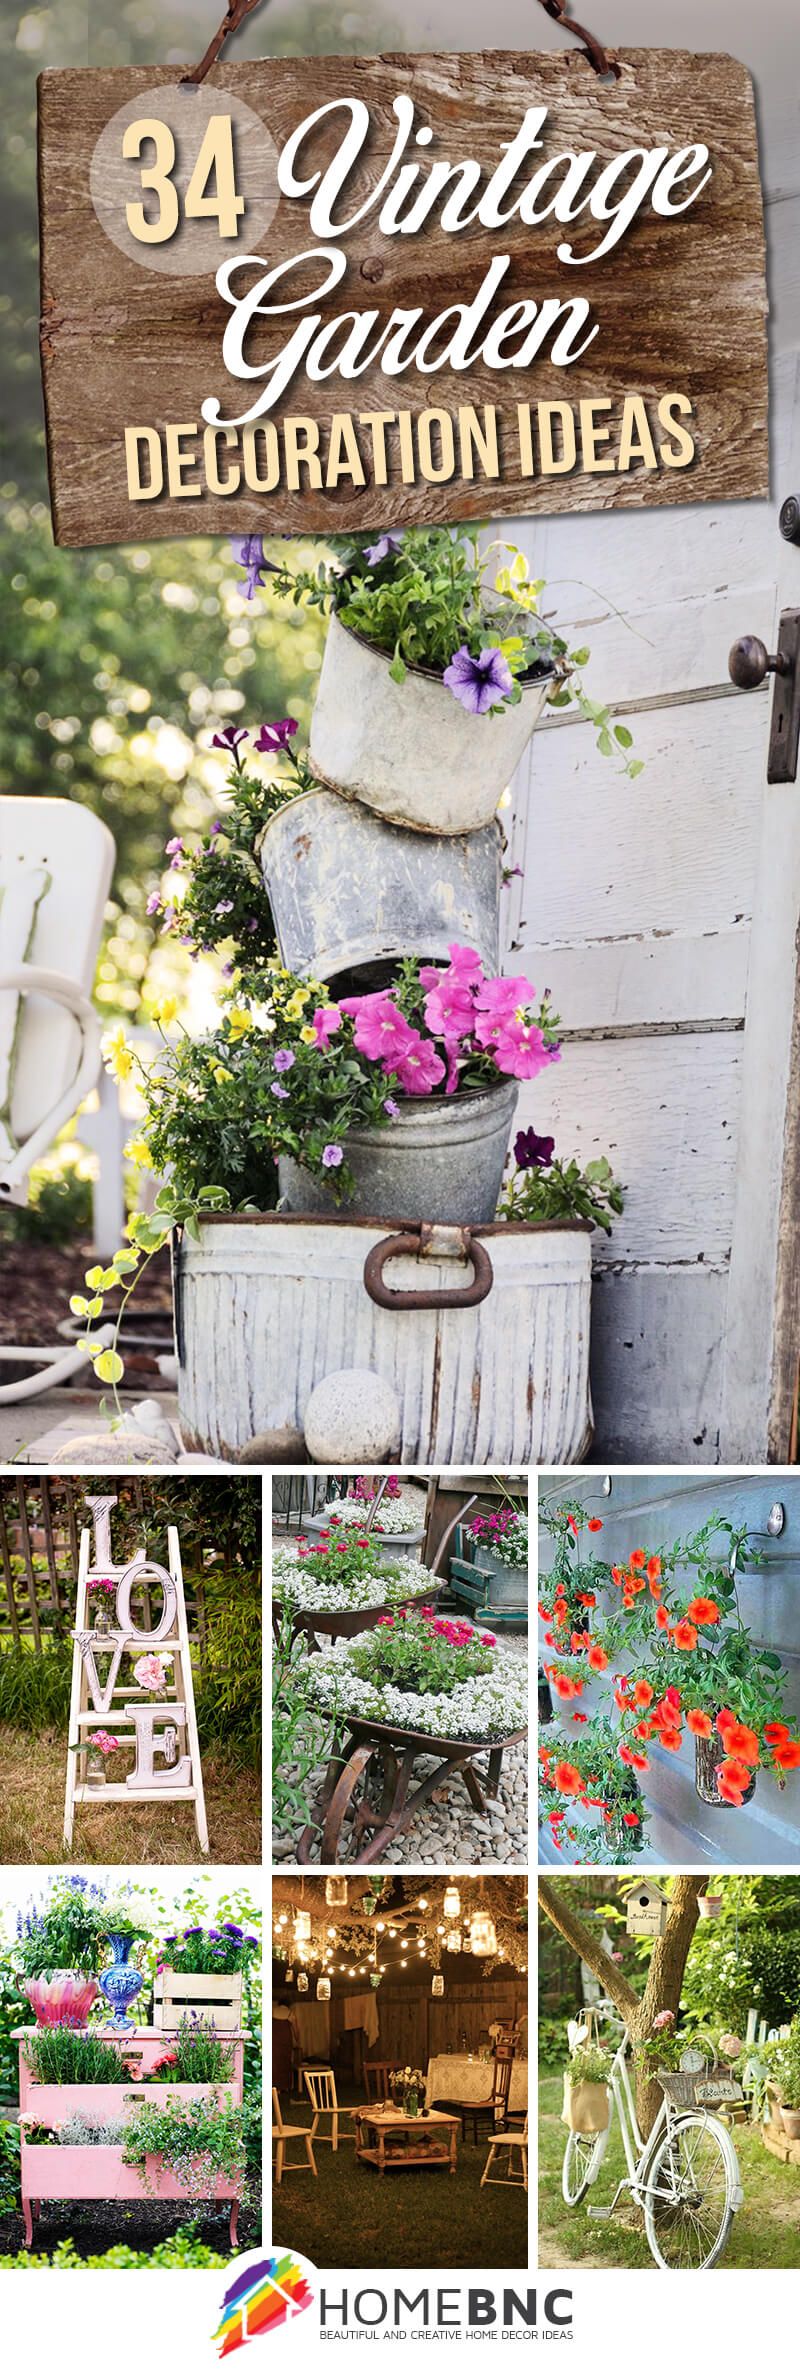 Lovely DIY Garden Decor Ideas You Will
Love